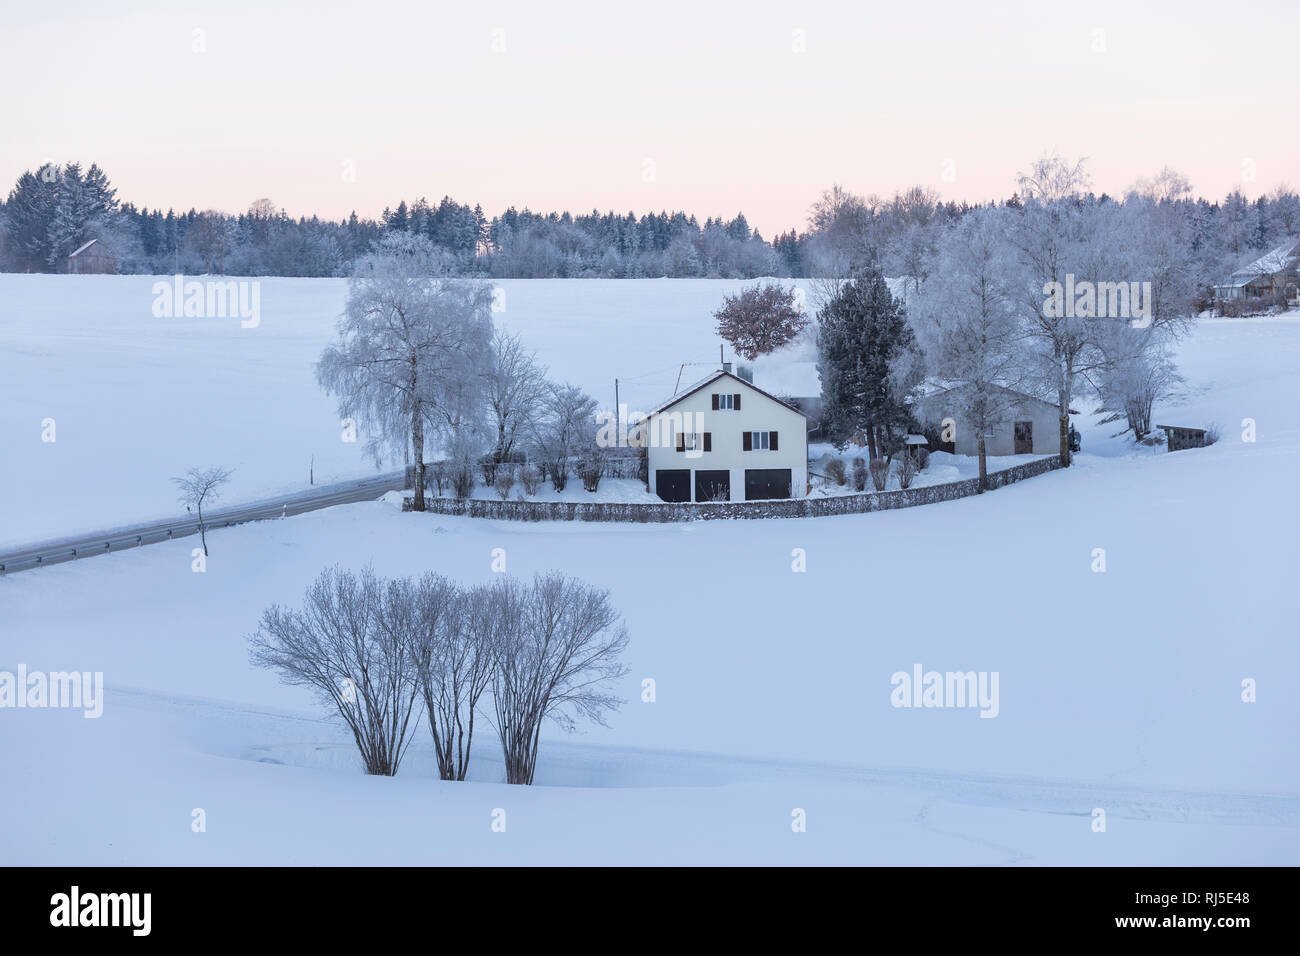 Aussiedlerhof im Schnee, Deutschland, Bayern, Allgäu, Morgen Banque D'Images